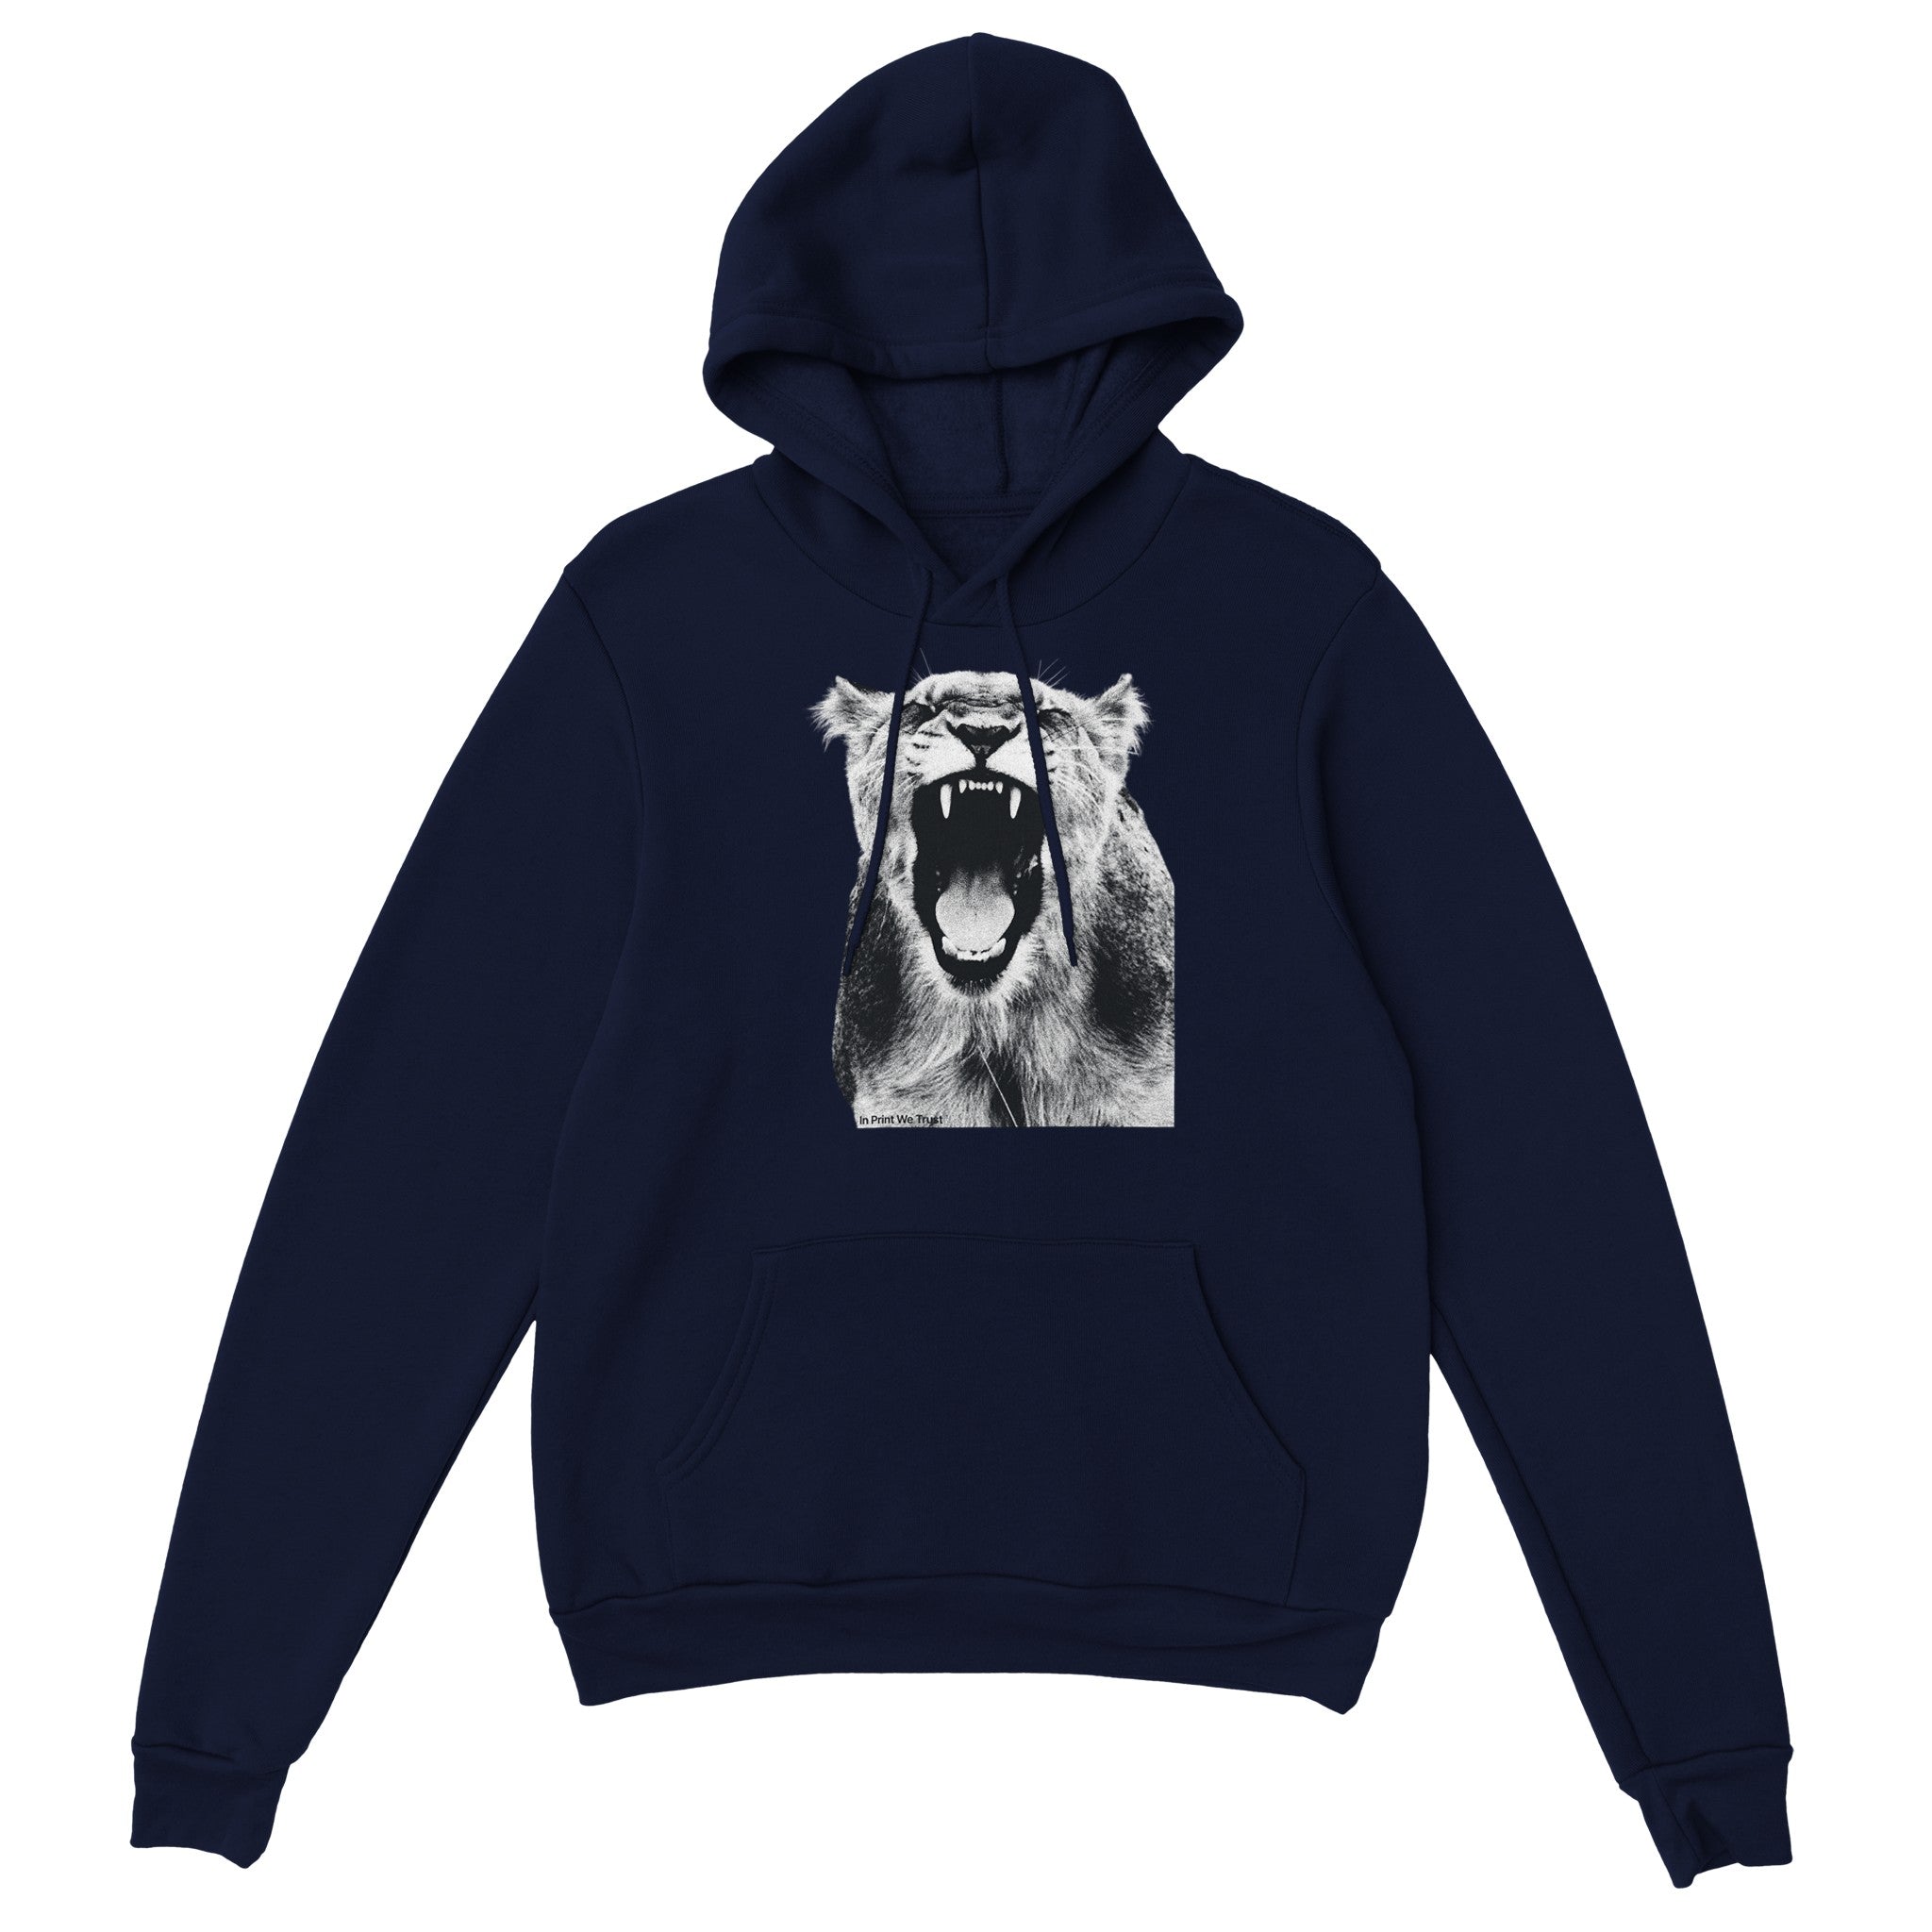 'Roar' hoodie - In Print We Trust